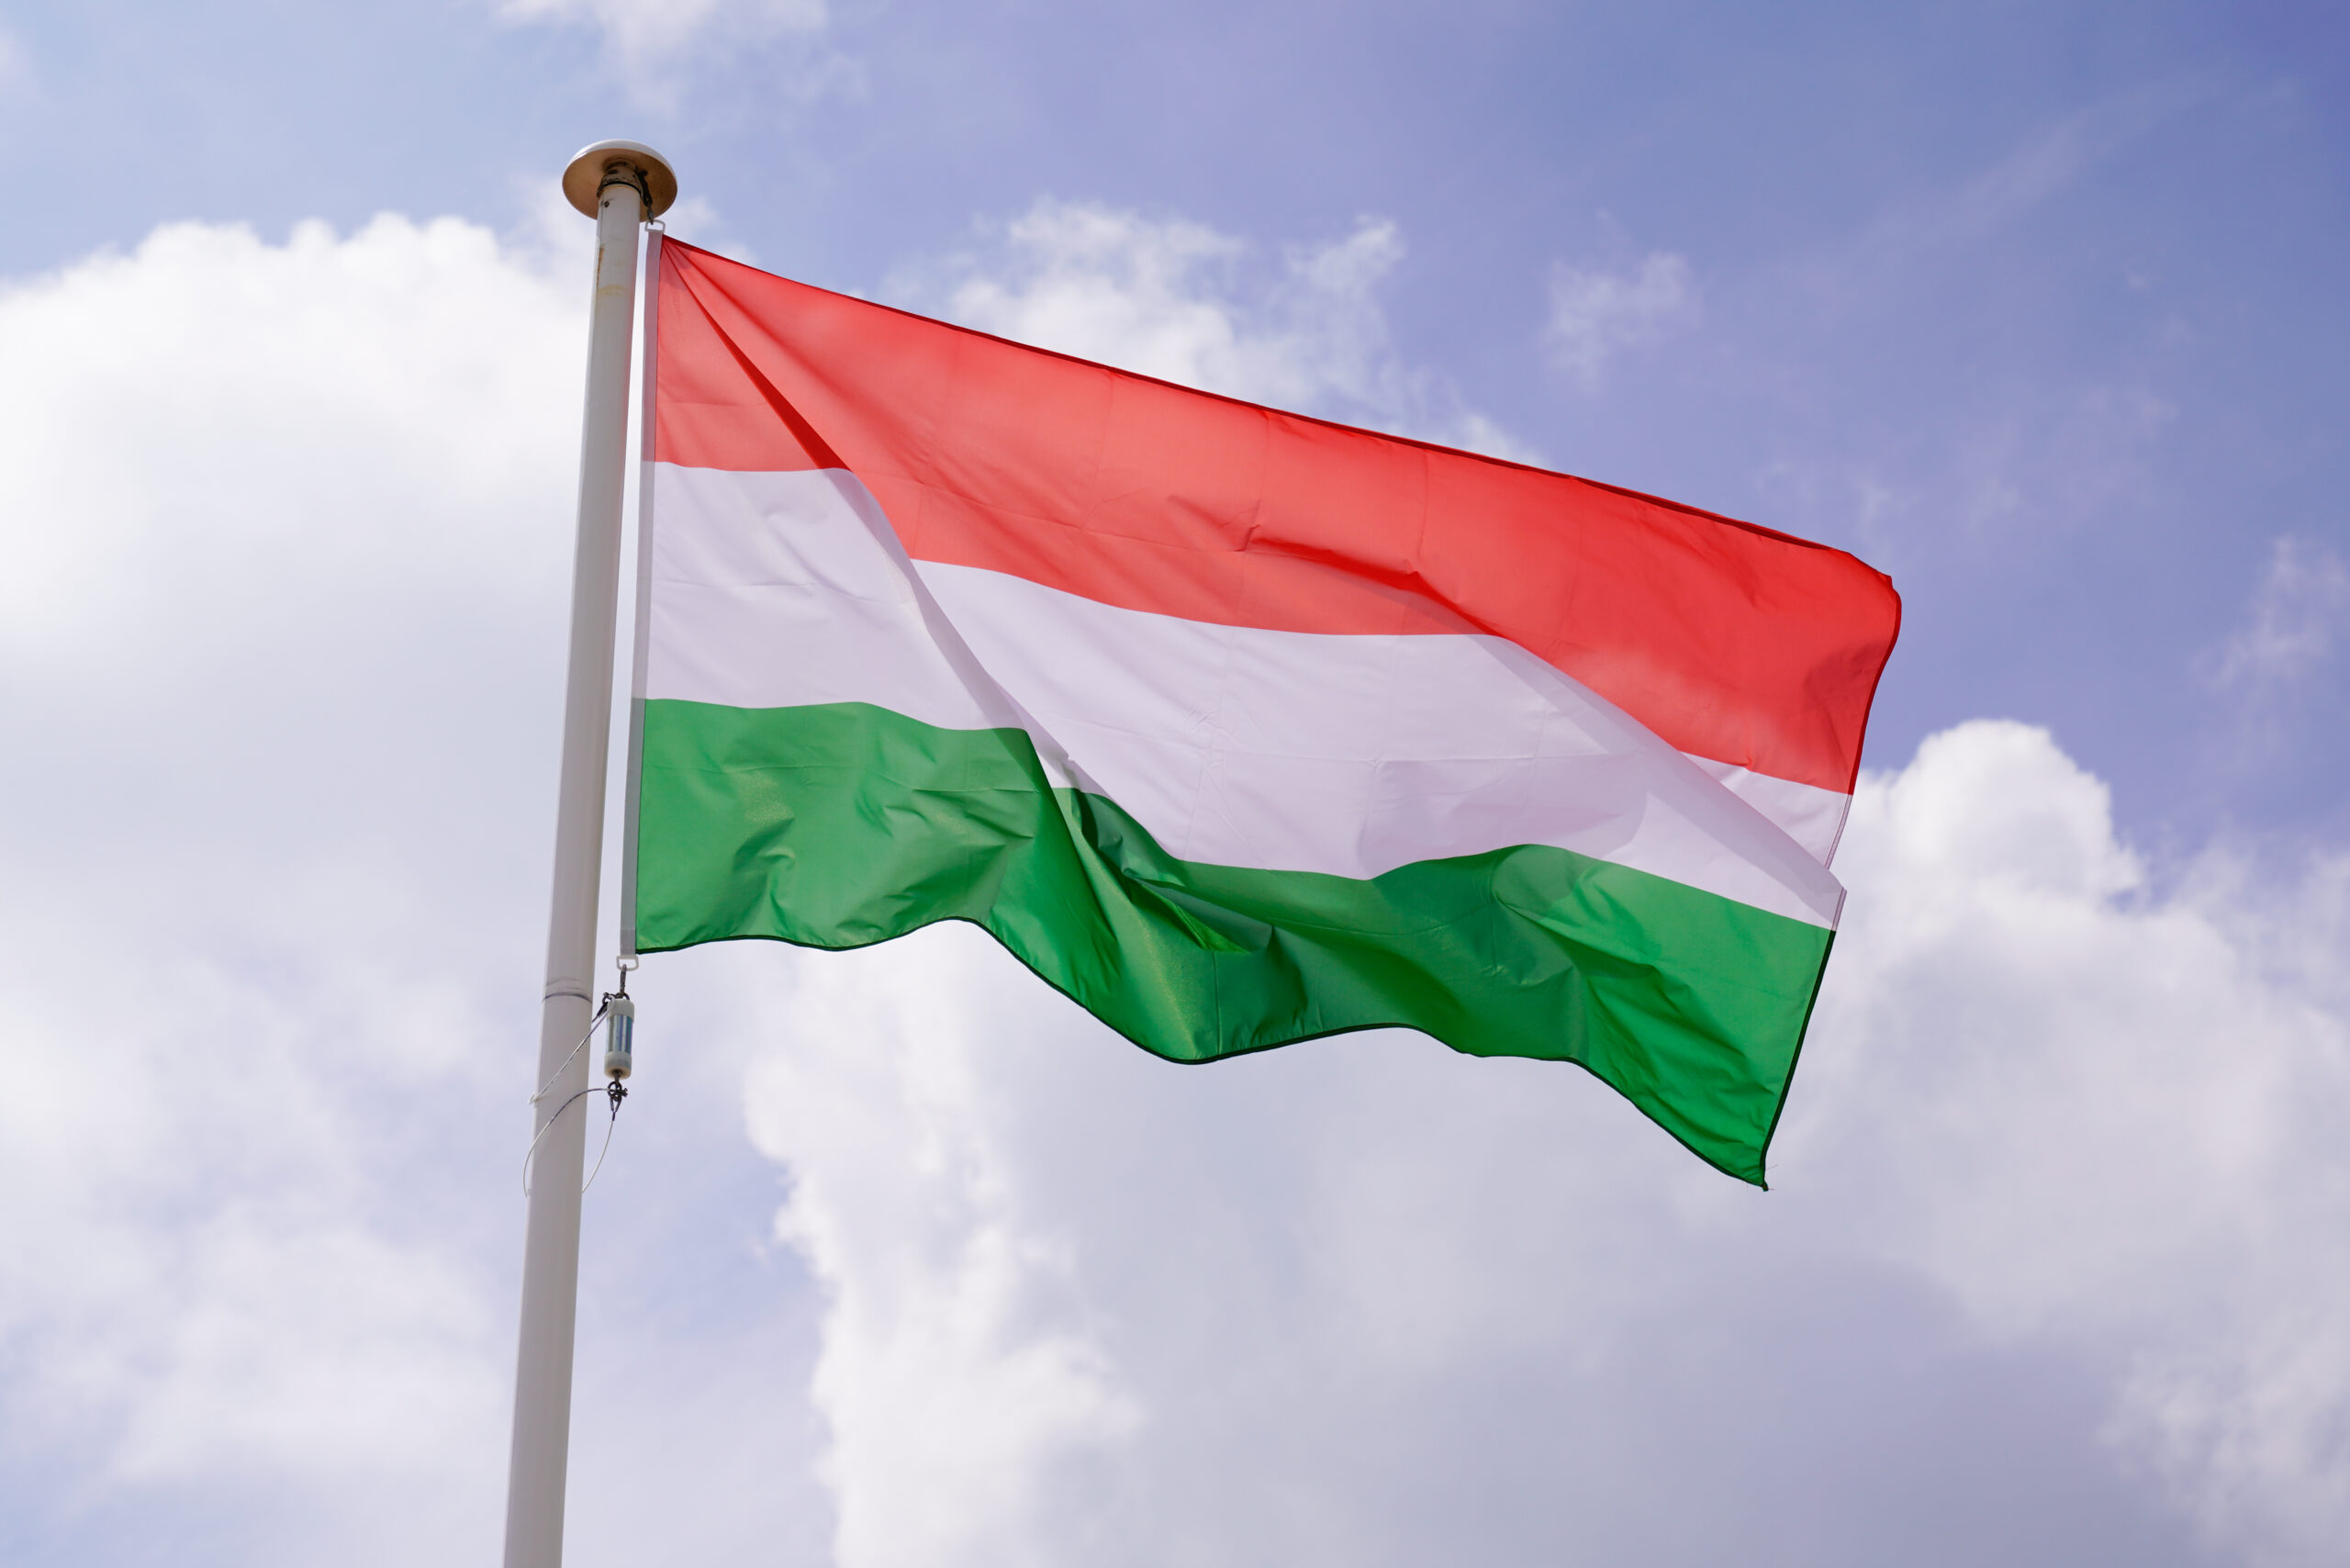 Magyarország tekintete a lakástulajdon növelésére olyan ágazatokban, mint a biztosítás